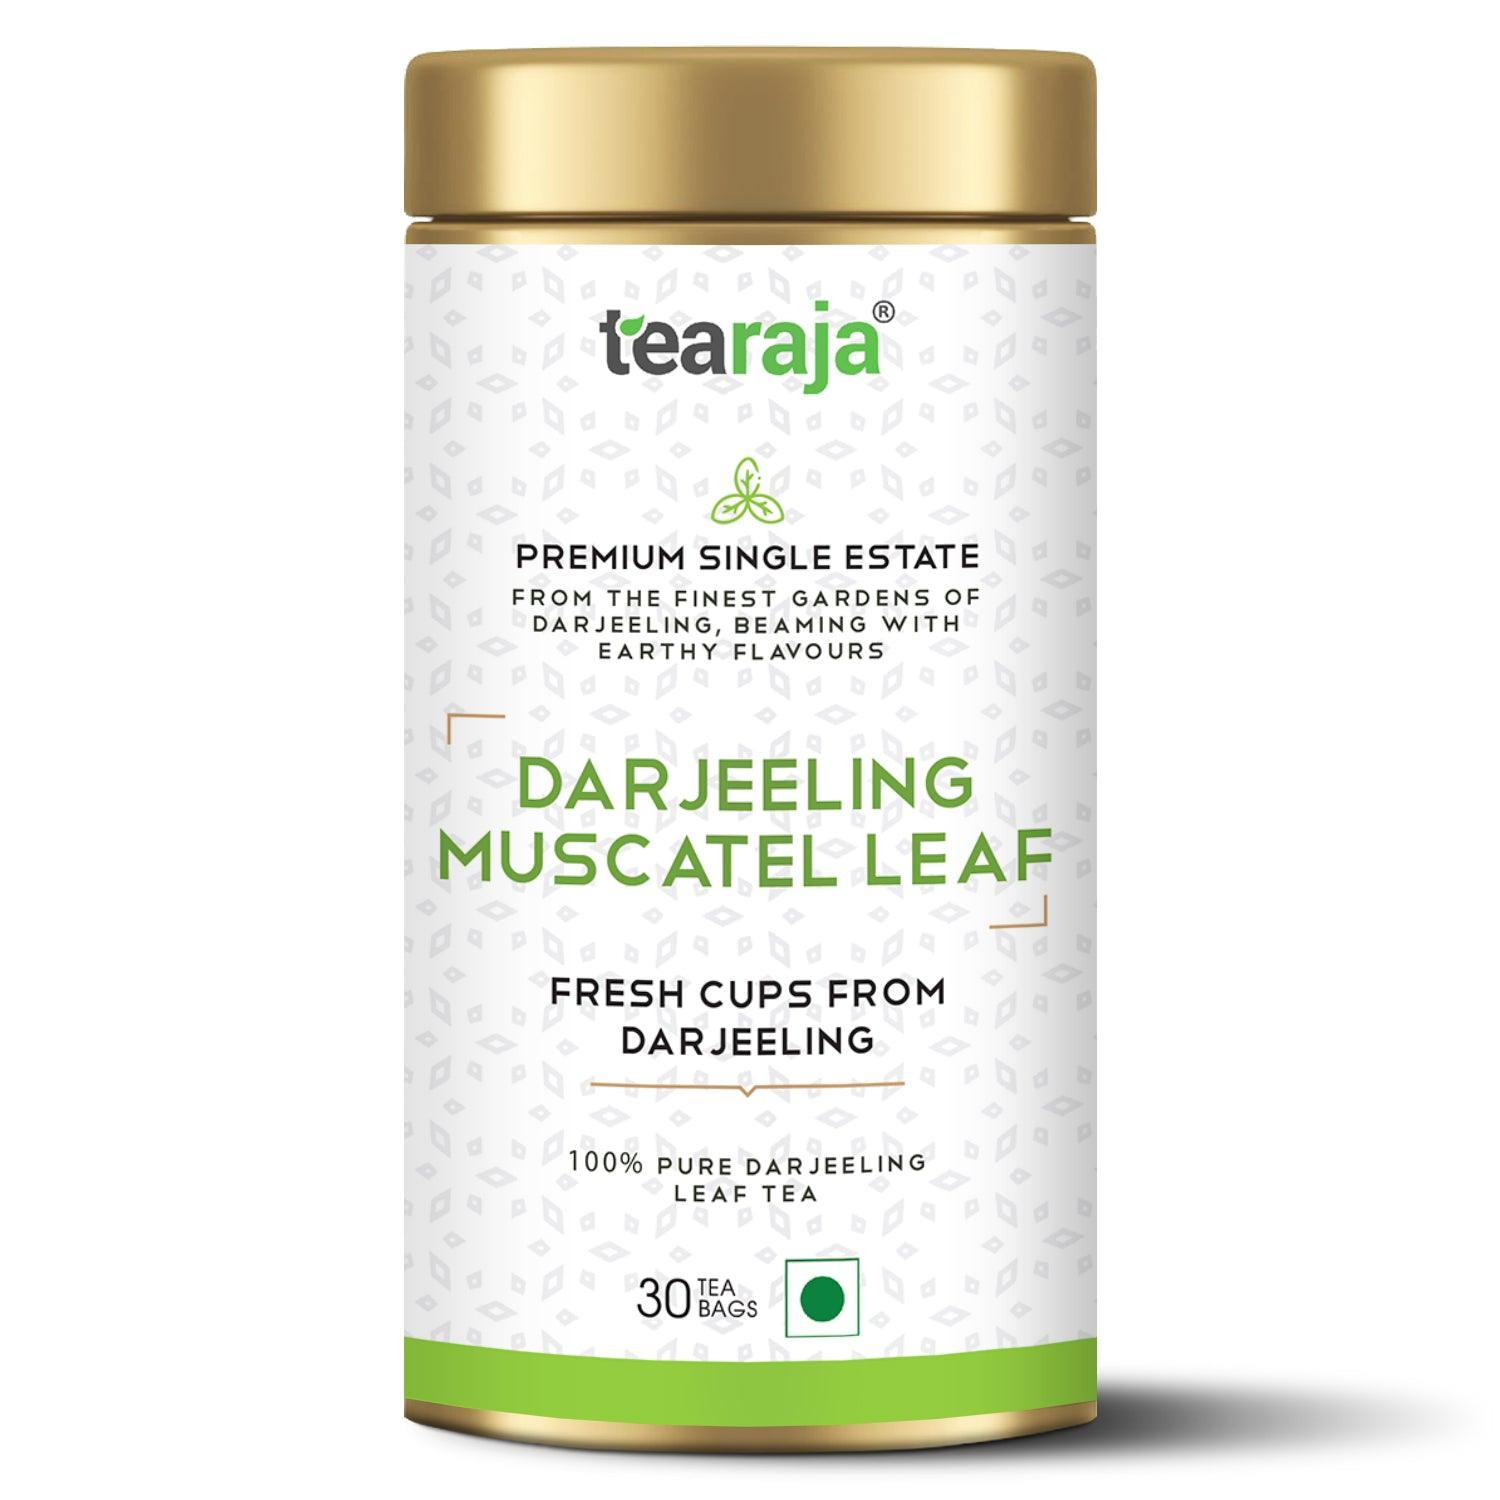 Darjeeling Muscatel Leaf 30 Tea Bags - Tearaja